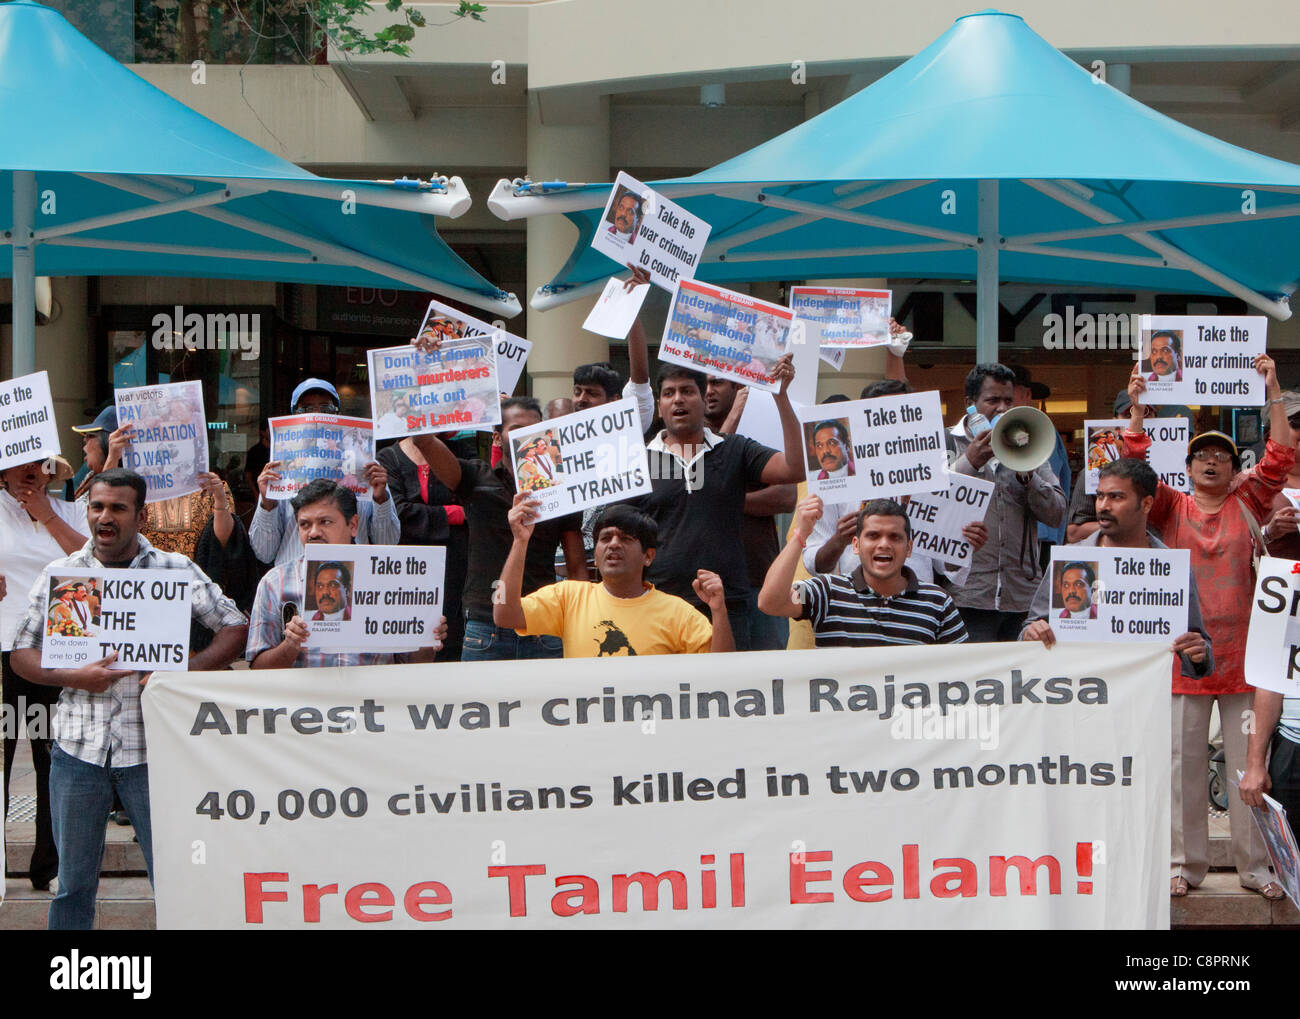 Demonstranten mit kostenlose Tamil Eelam banner am CHOGM 2011 Proteste gegen Sri-lankischen Präsidenten Mahendra Rajapakse demonstriert. Stockfoto